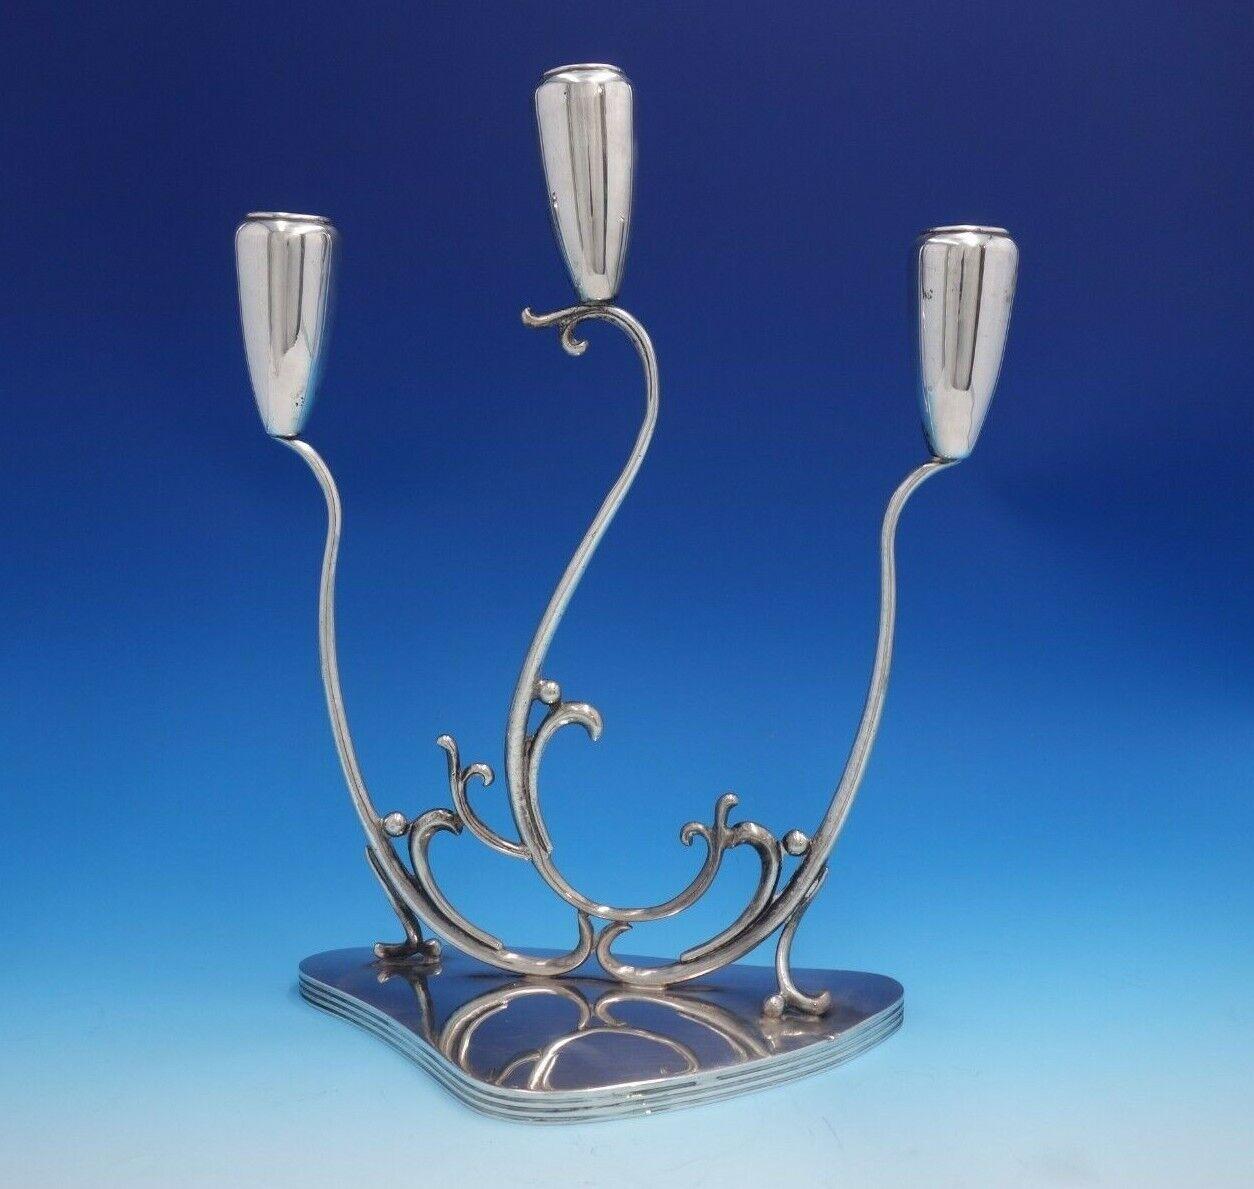 C. Zurita

Stunning C. Zurita .925 silver 3-light candelabra pair with Modern, flowing design. These pieces measures 10